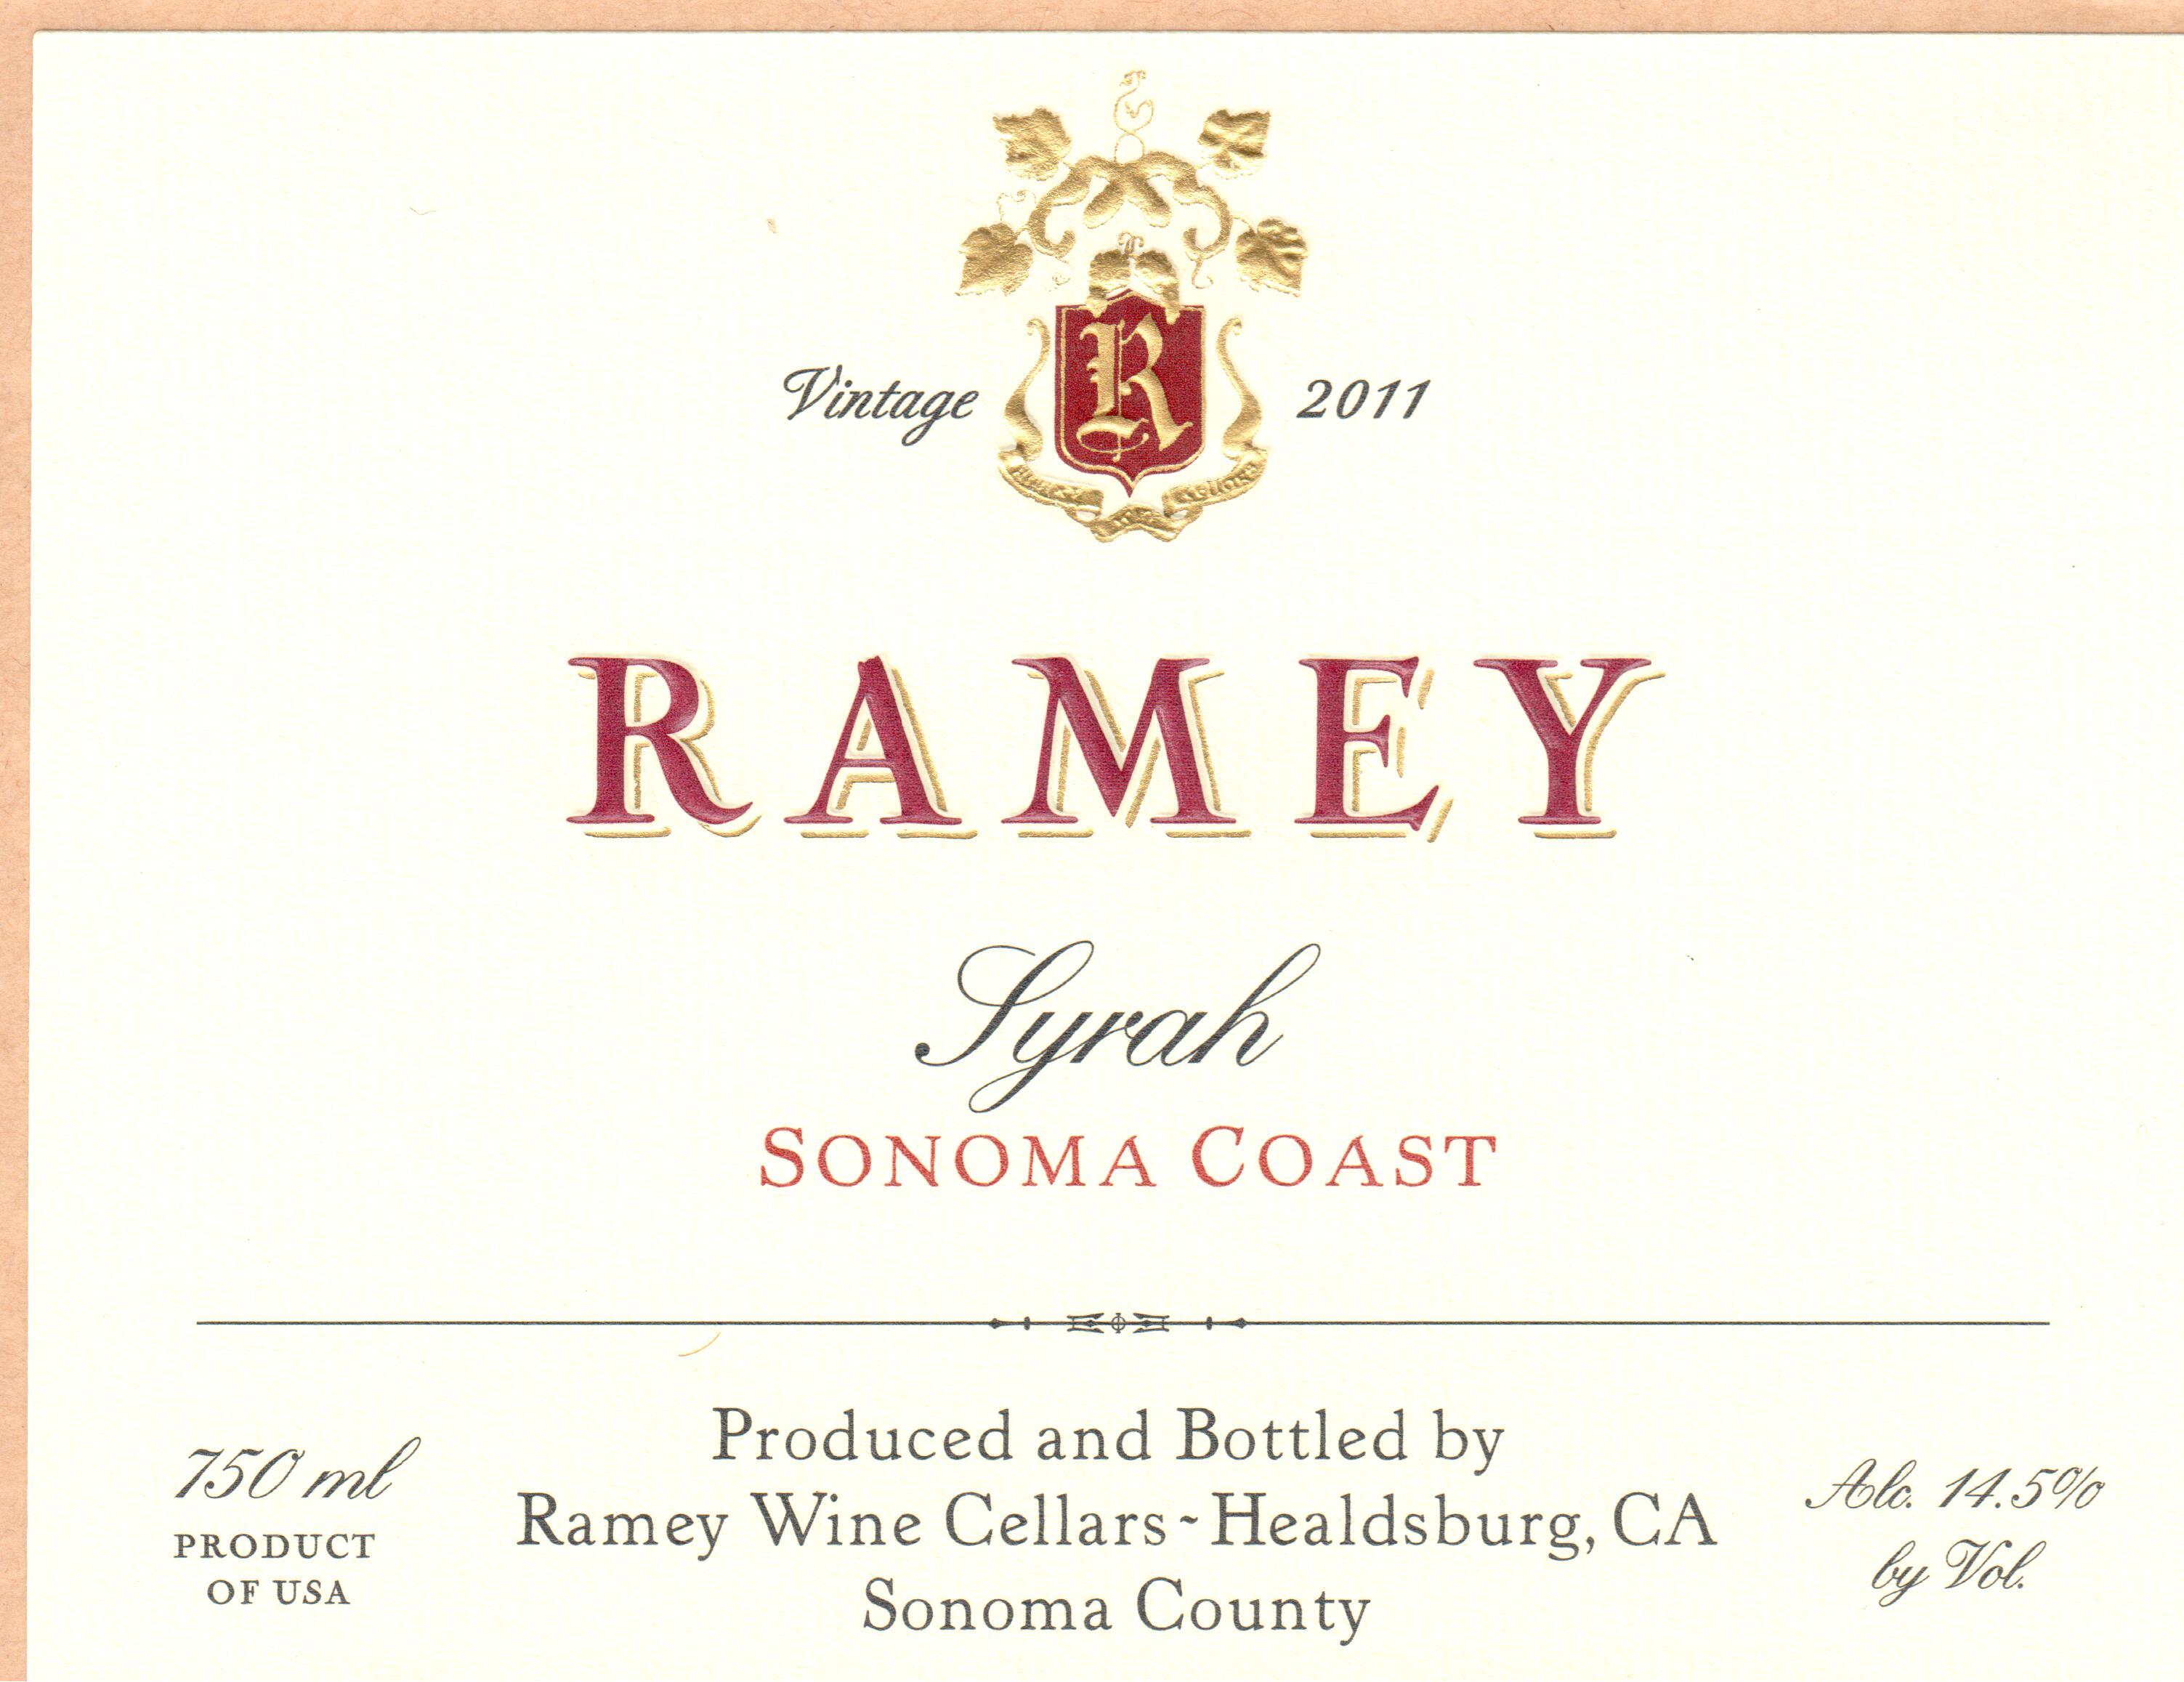 2011 Ramey Wine Cellars Syrah Sonoma Coast image